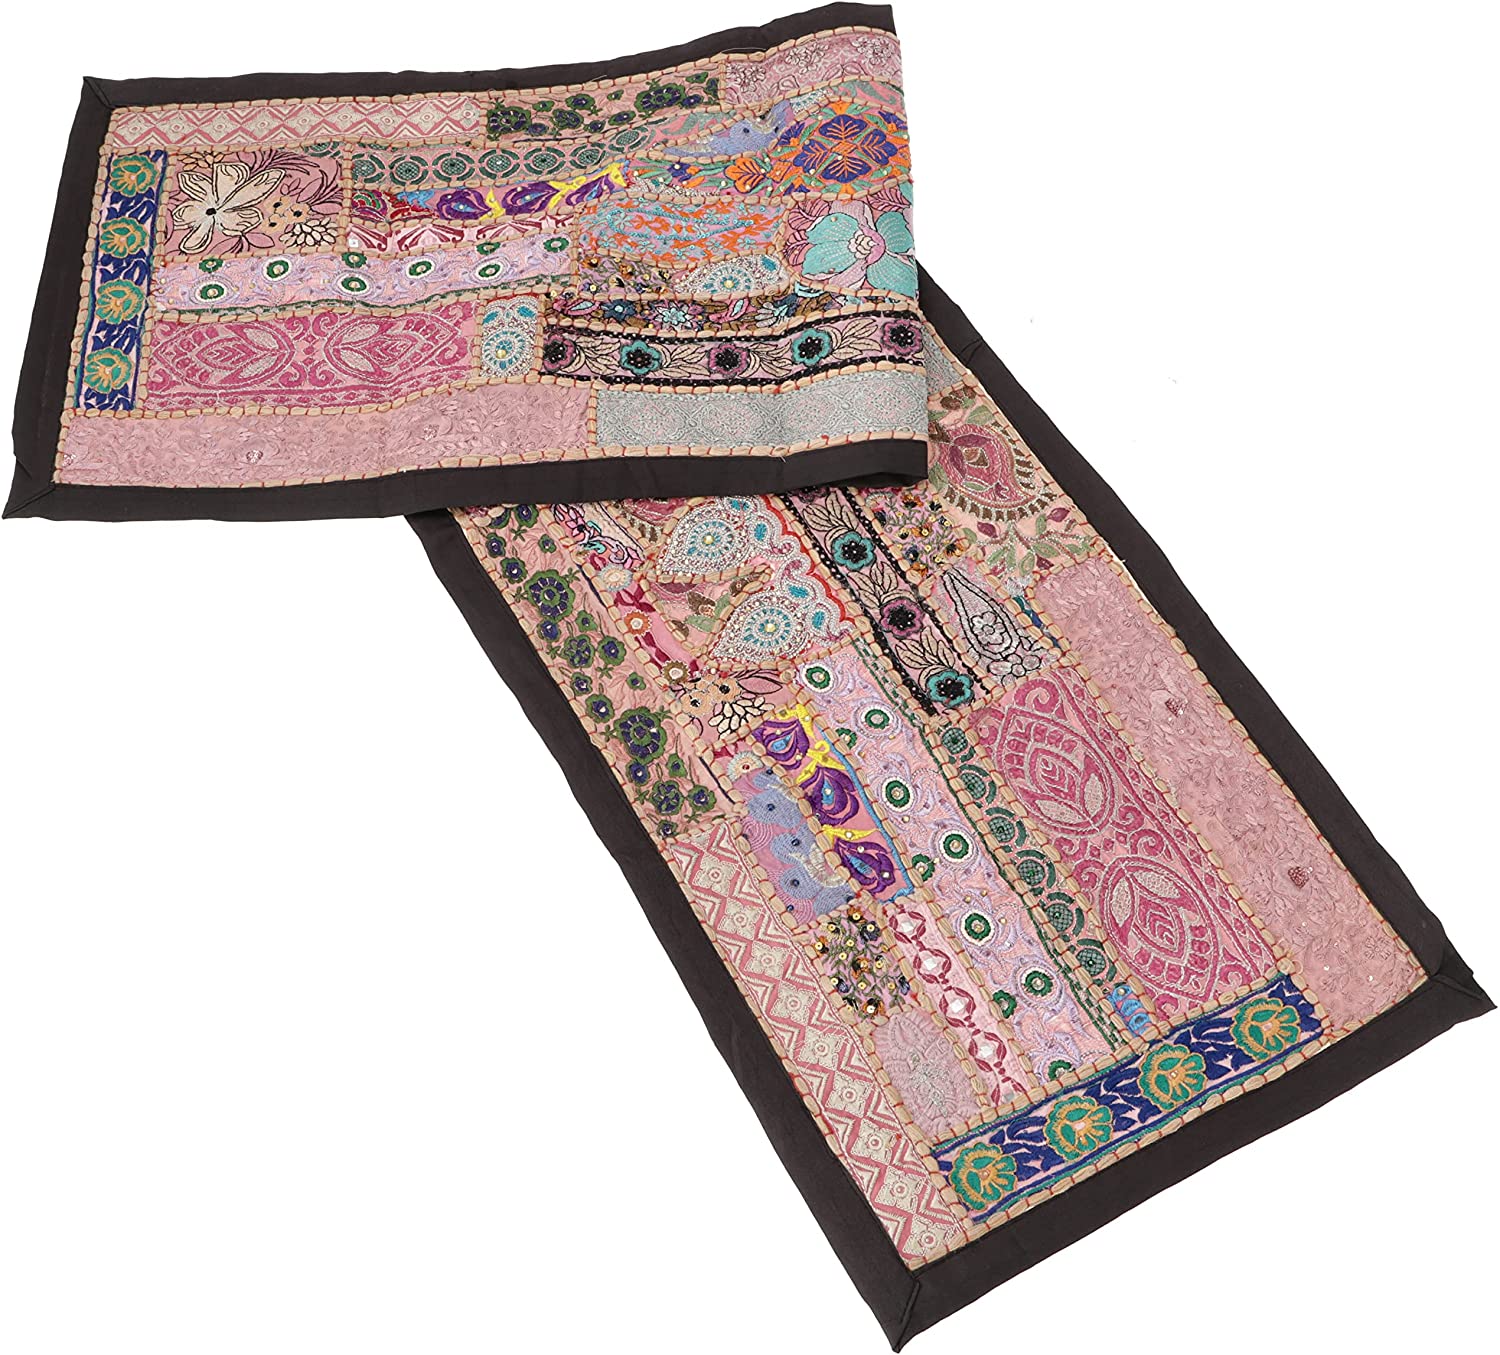 Guru-Shop GURU SHOP Oriental Table Runner, Wall Hanging, Single Piece, 150 x 35 cm, Motif 1, Blue, Cotton, Table Runner, Tablecloths